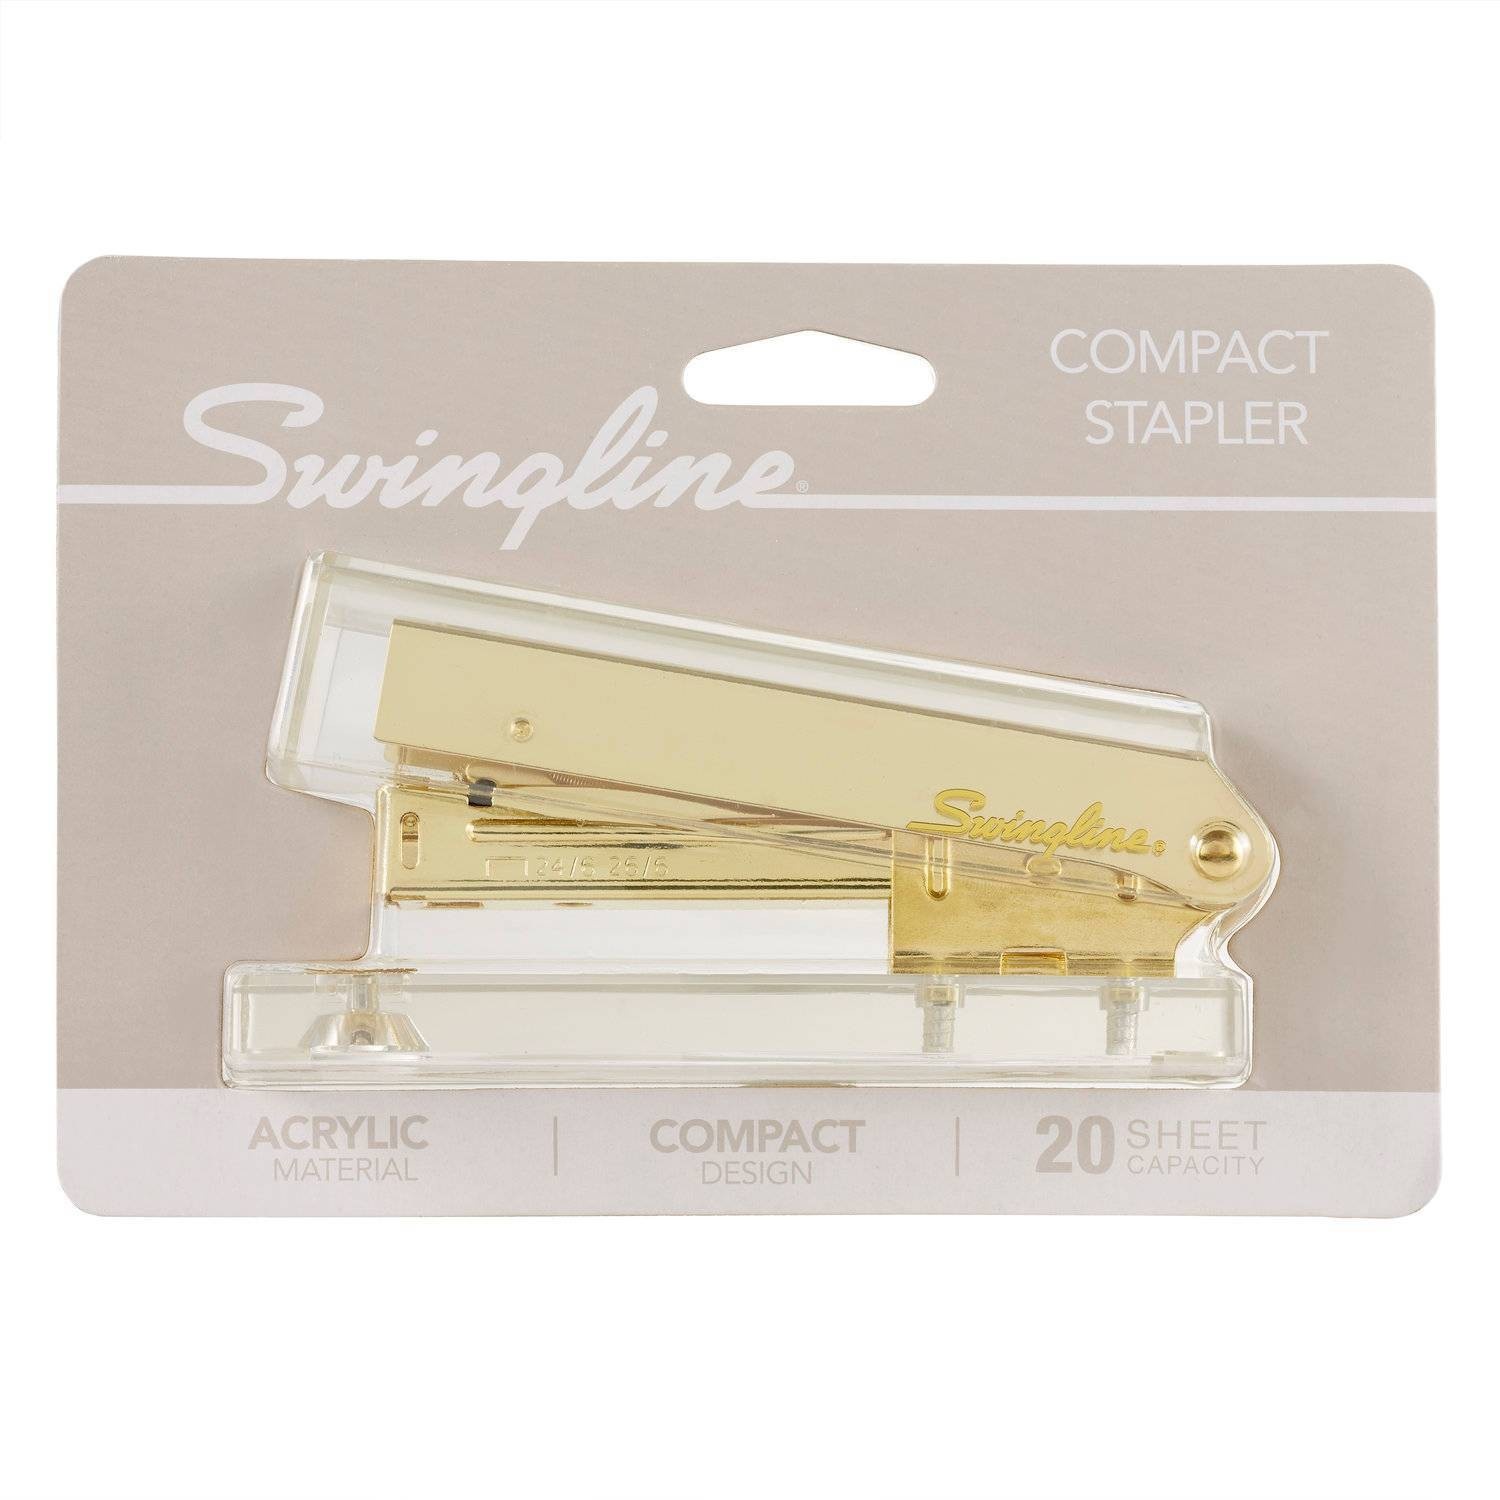 slide 1 of 5, Swingline Acrylic Stapler - Gold, 1 ct